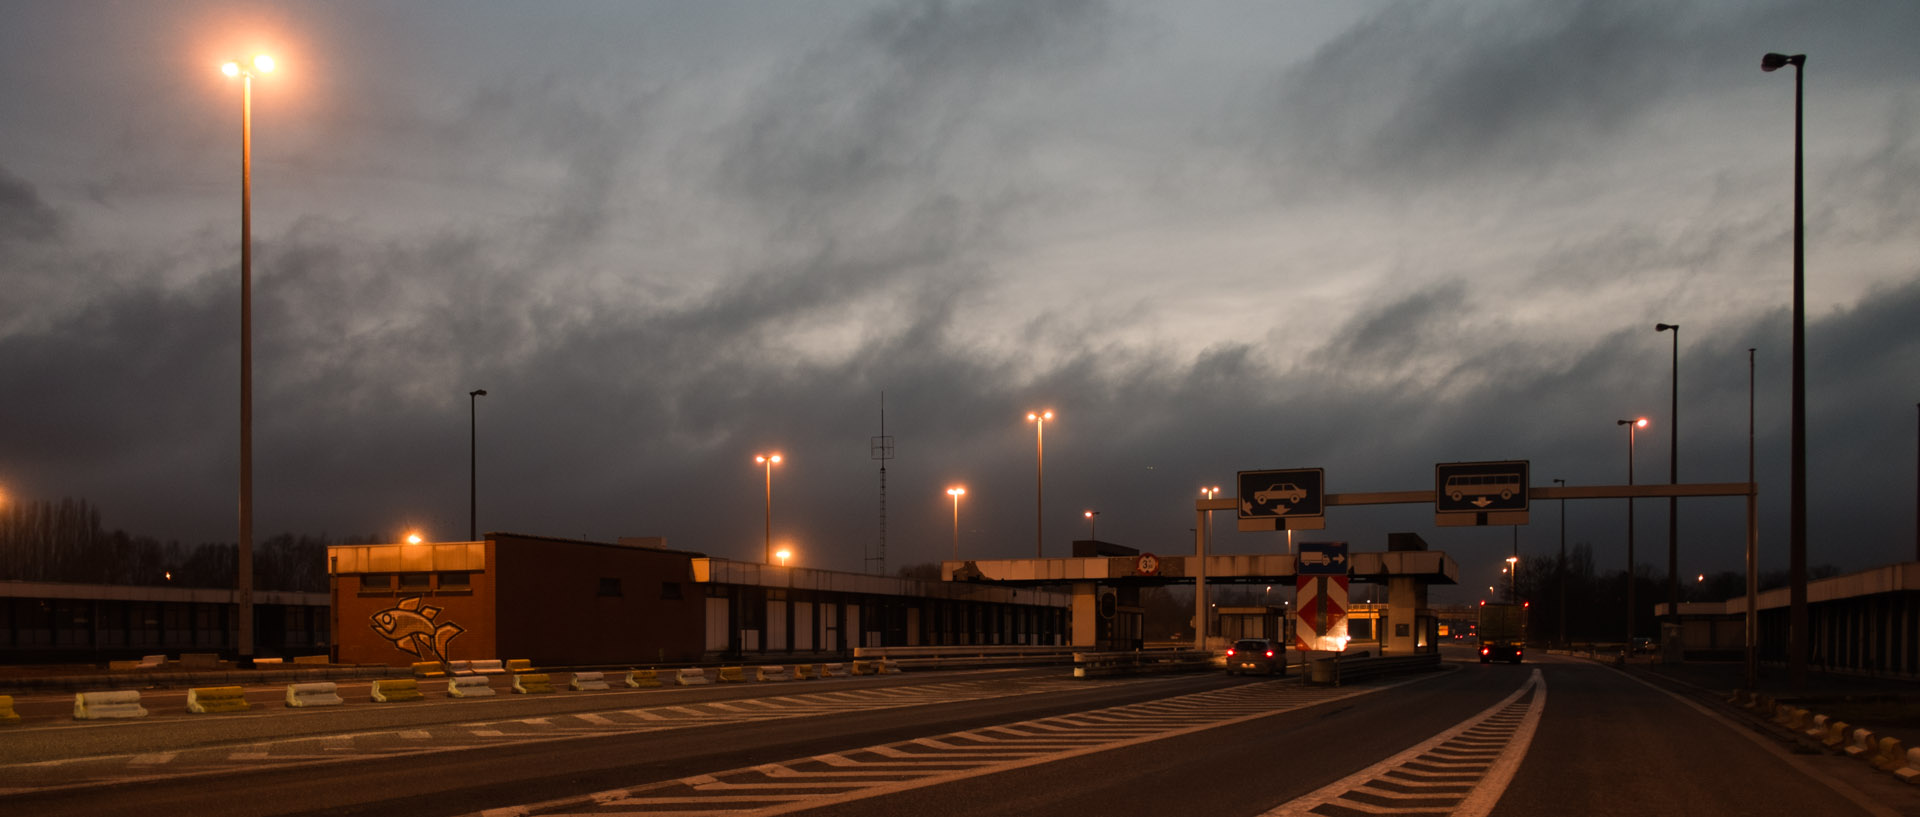 Dimanche 12 janvier 2014, 17:38, autoroute E17, frontière France Belgique